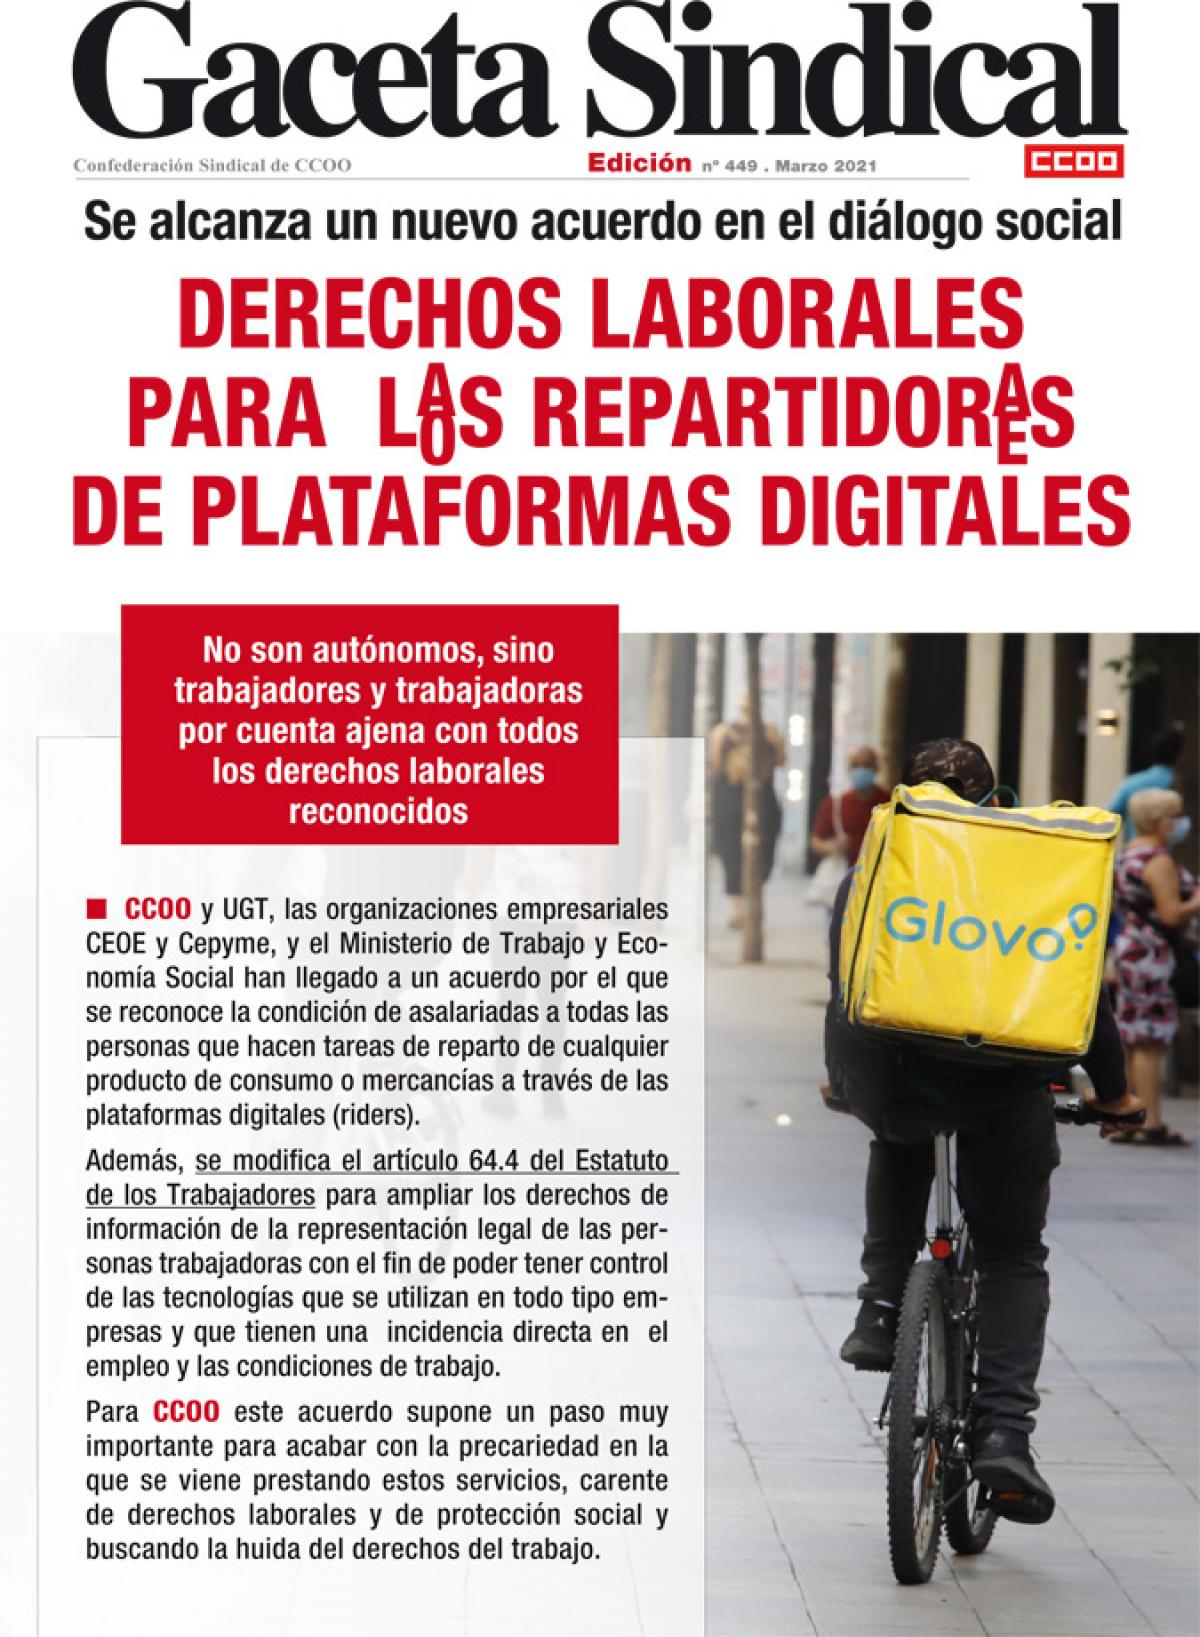 Gaceta Sindical n 449. Derechos laborales para los repartidores de plataformas digitales